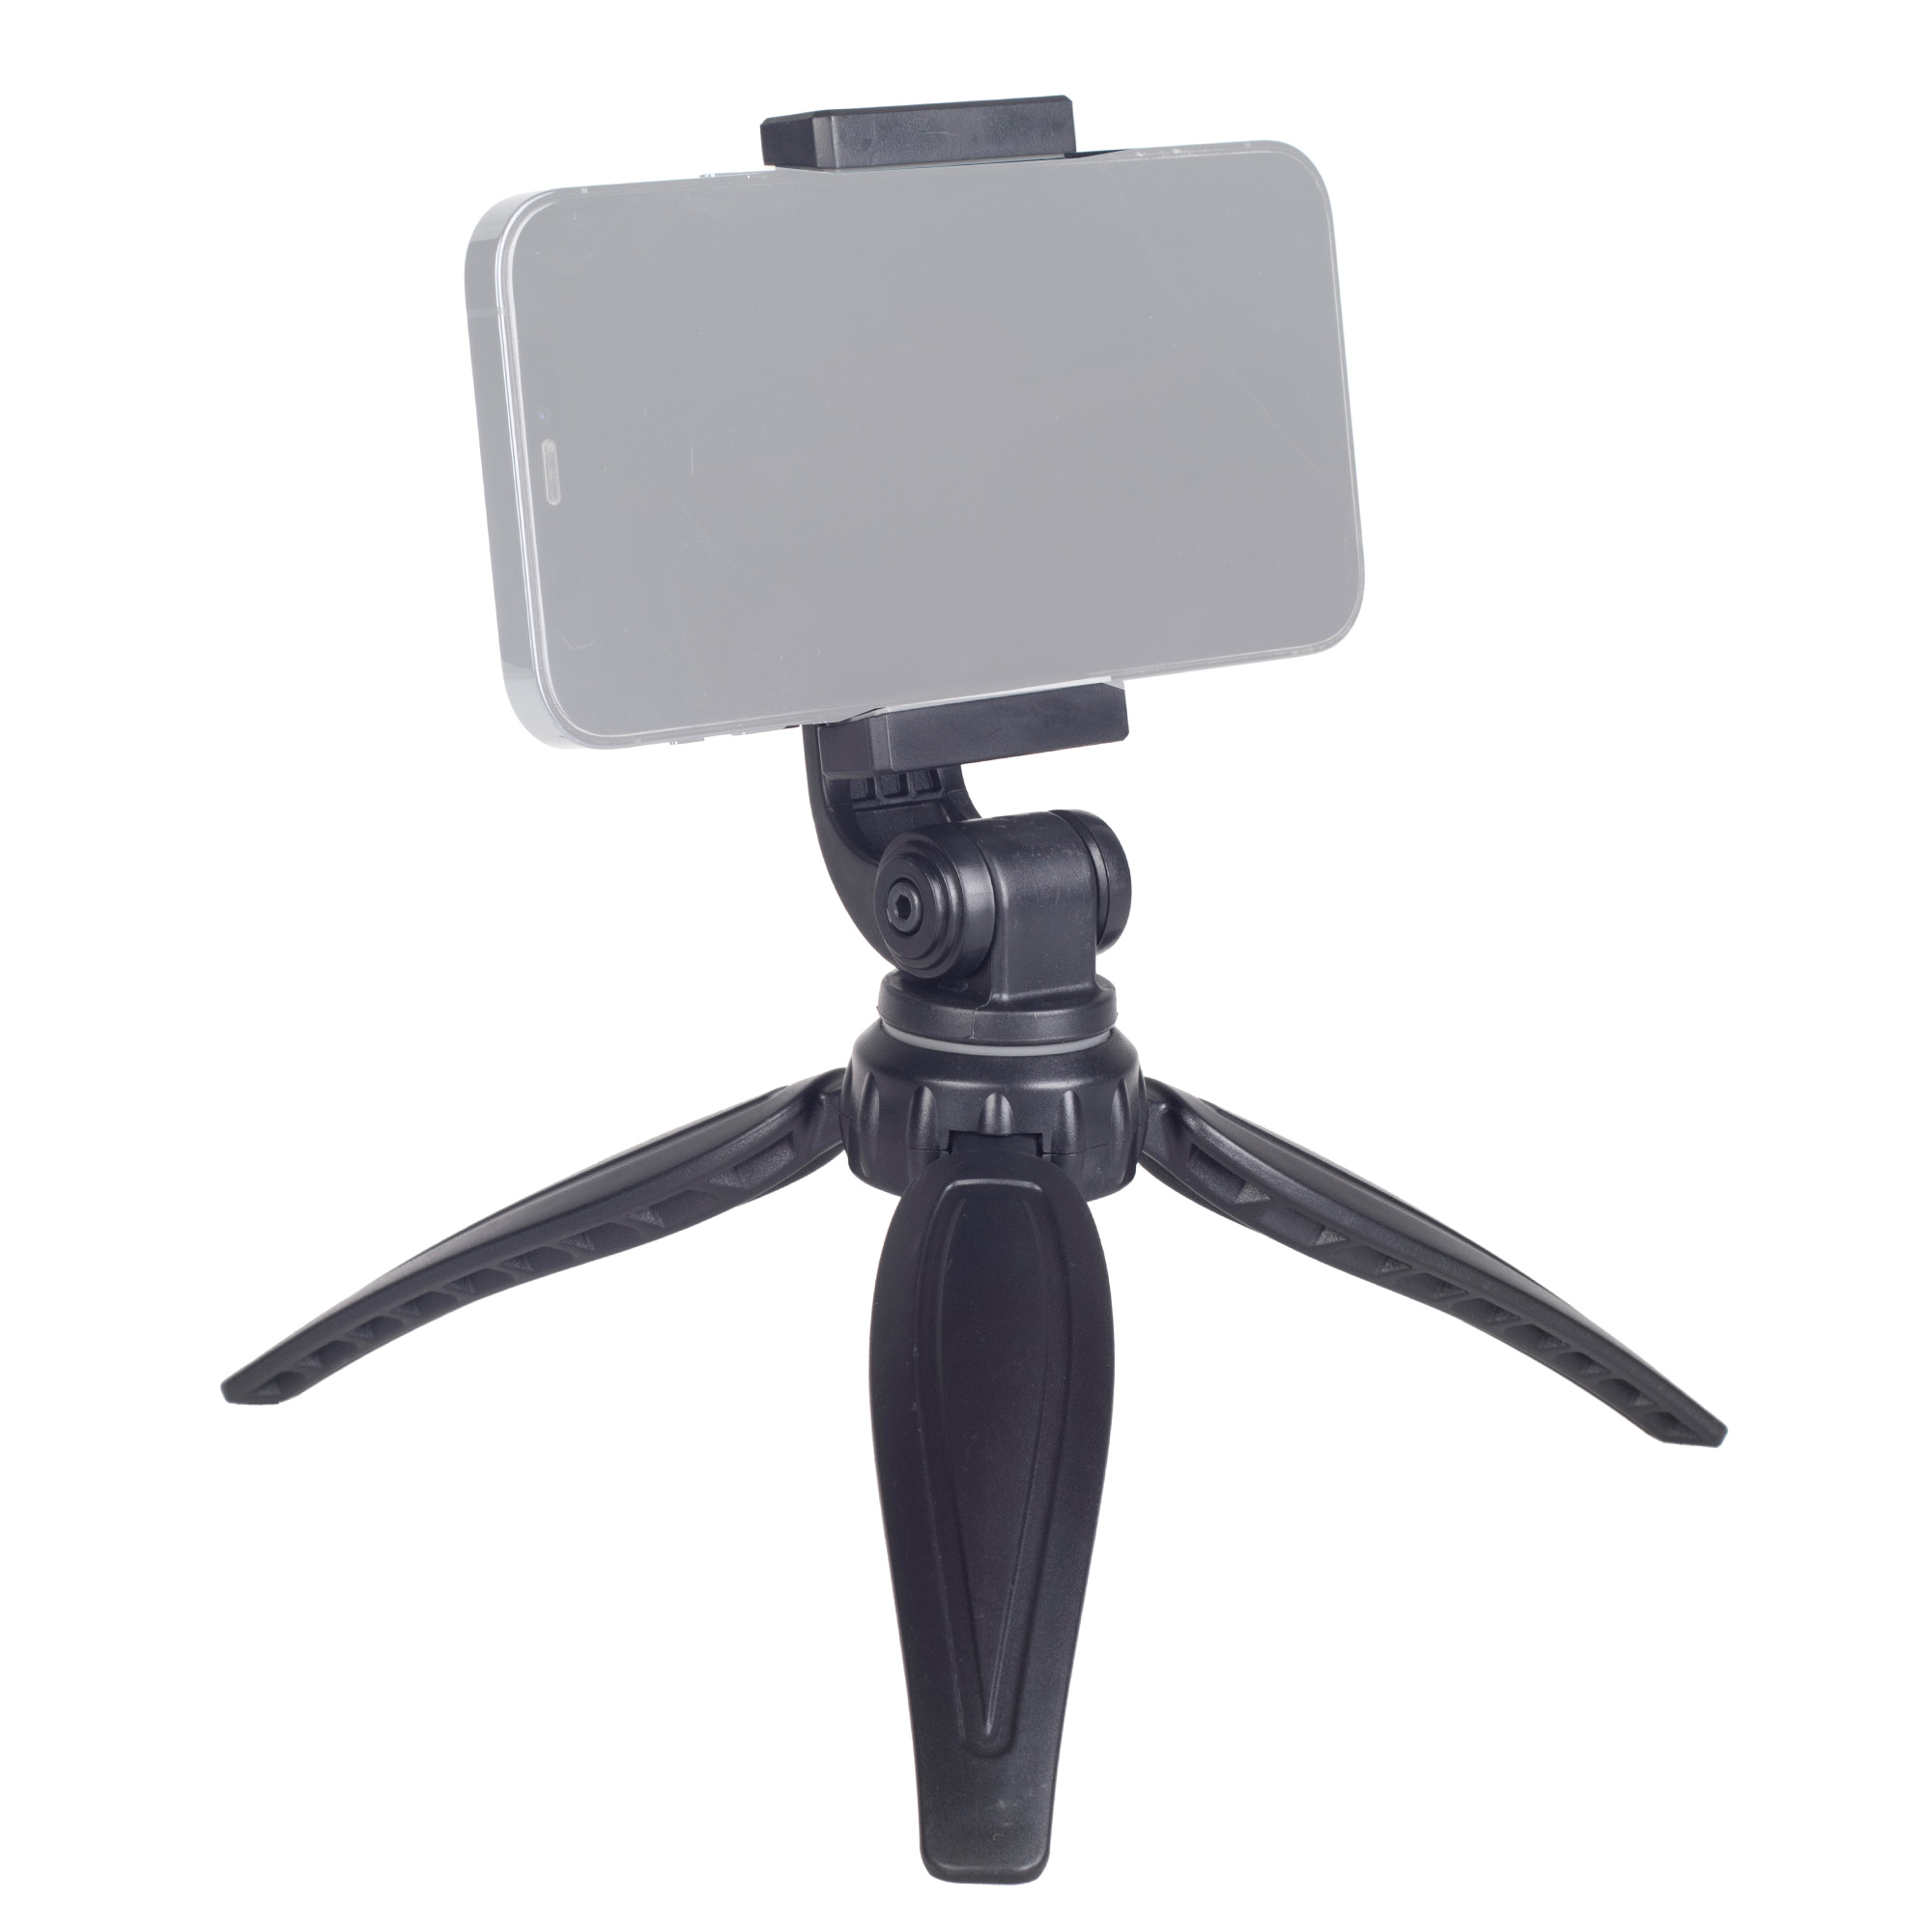 ayex kompaktes Mini-Tripod mit beweglicher Smartphonehalterung Flexibel Robust für Smartphones bis 7 Zoll Perfekt für verwacklungsfreie Aufnahmen